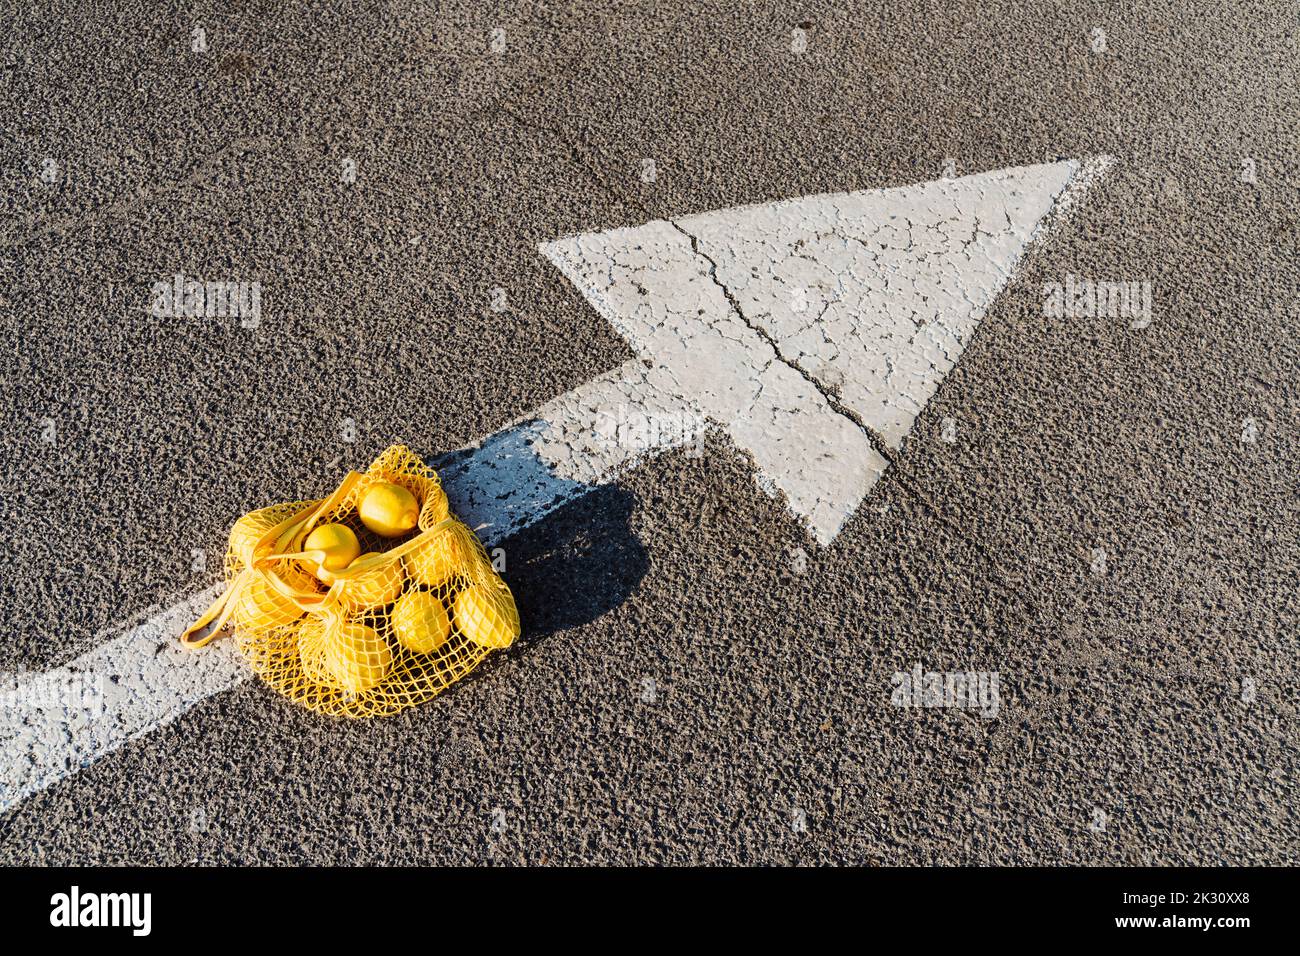 Mesh bag with lemons on arrow symbol Stock Photo